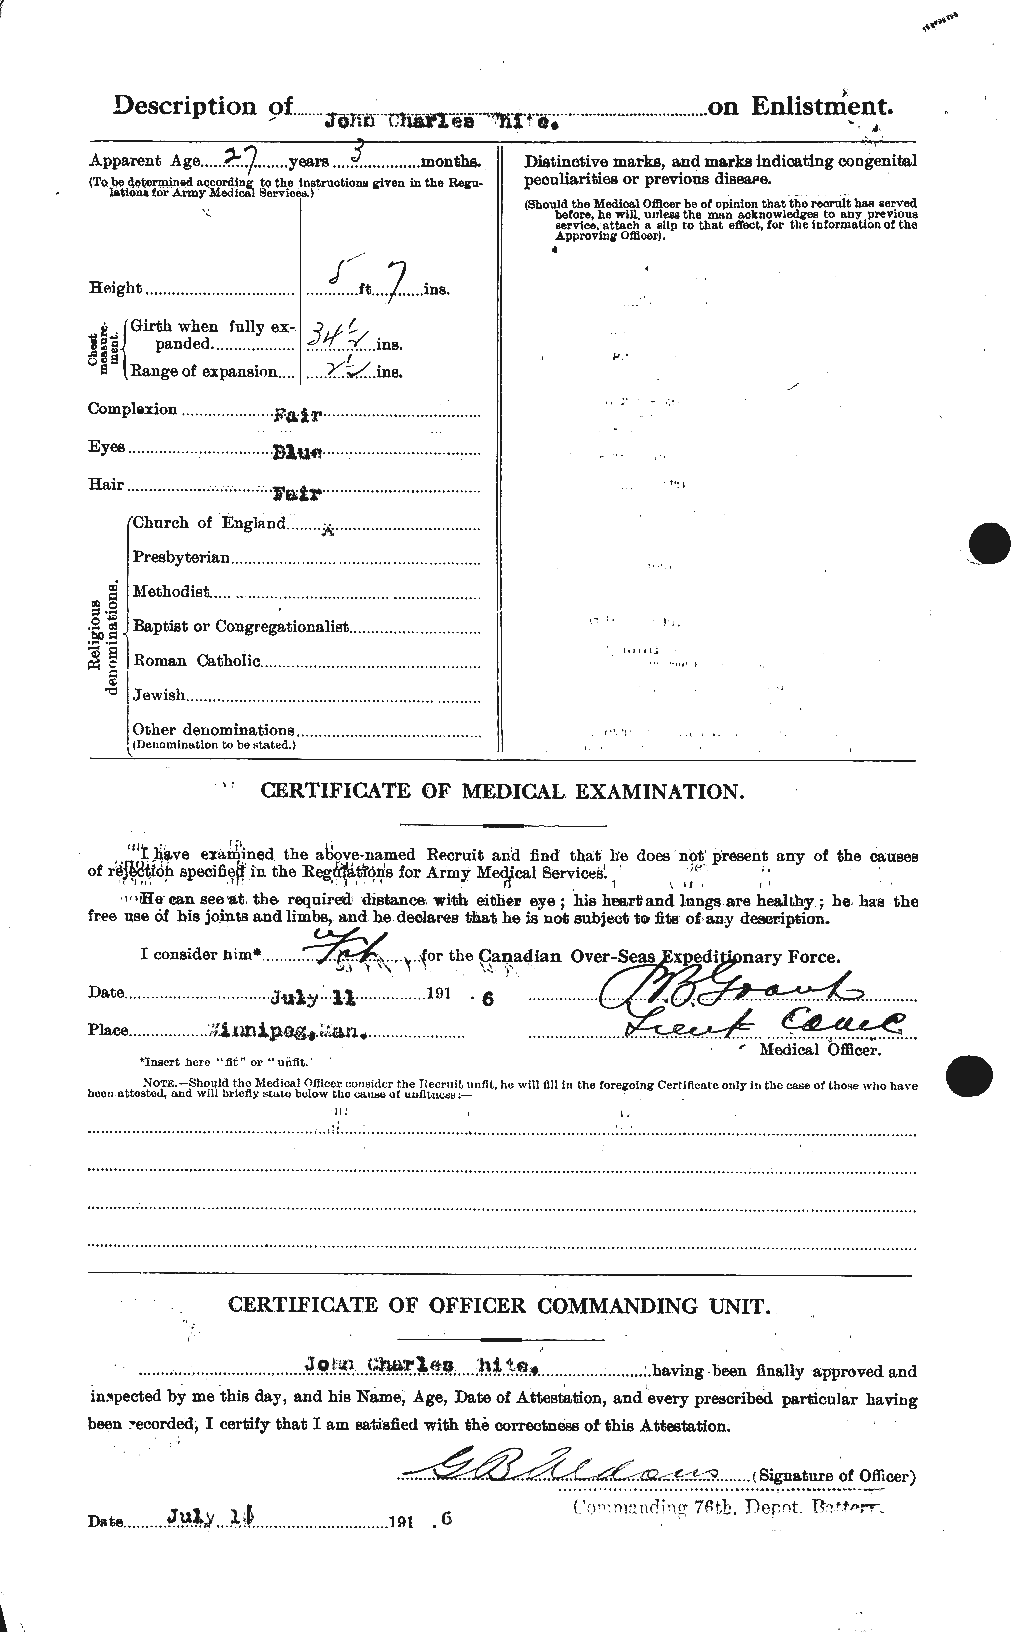 Dossiers du Personnel de la Première Guerre mondiale - CEC 671547b